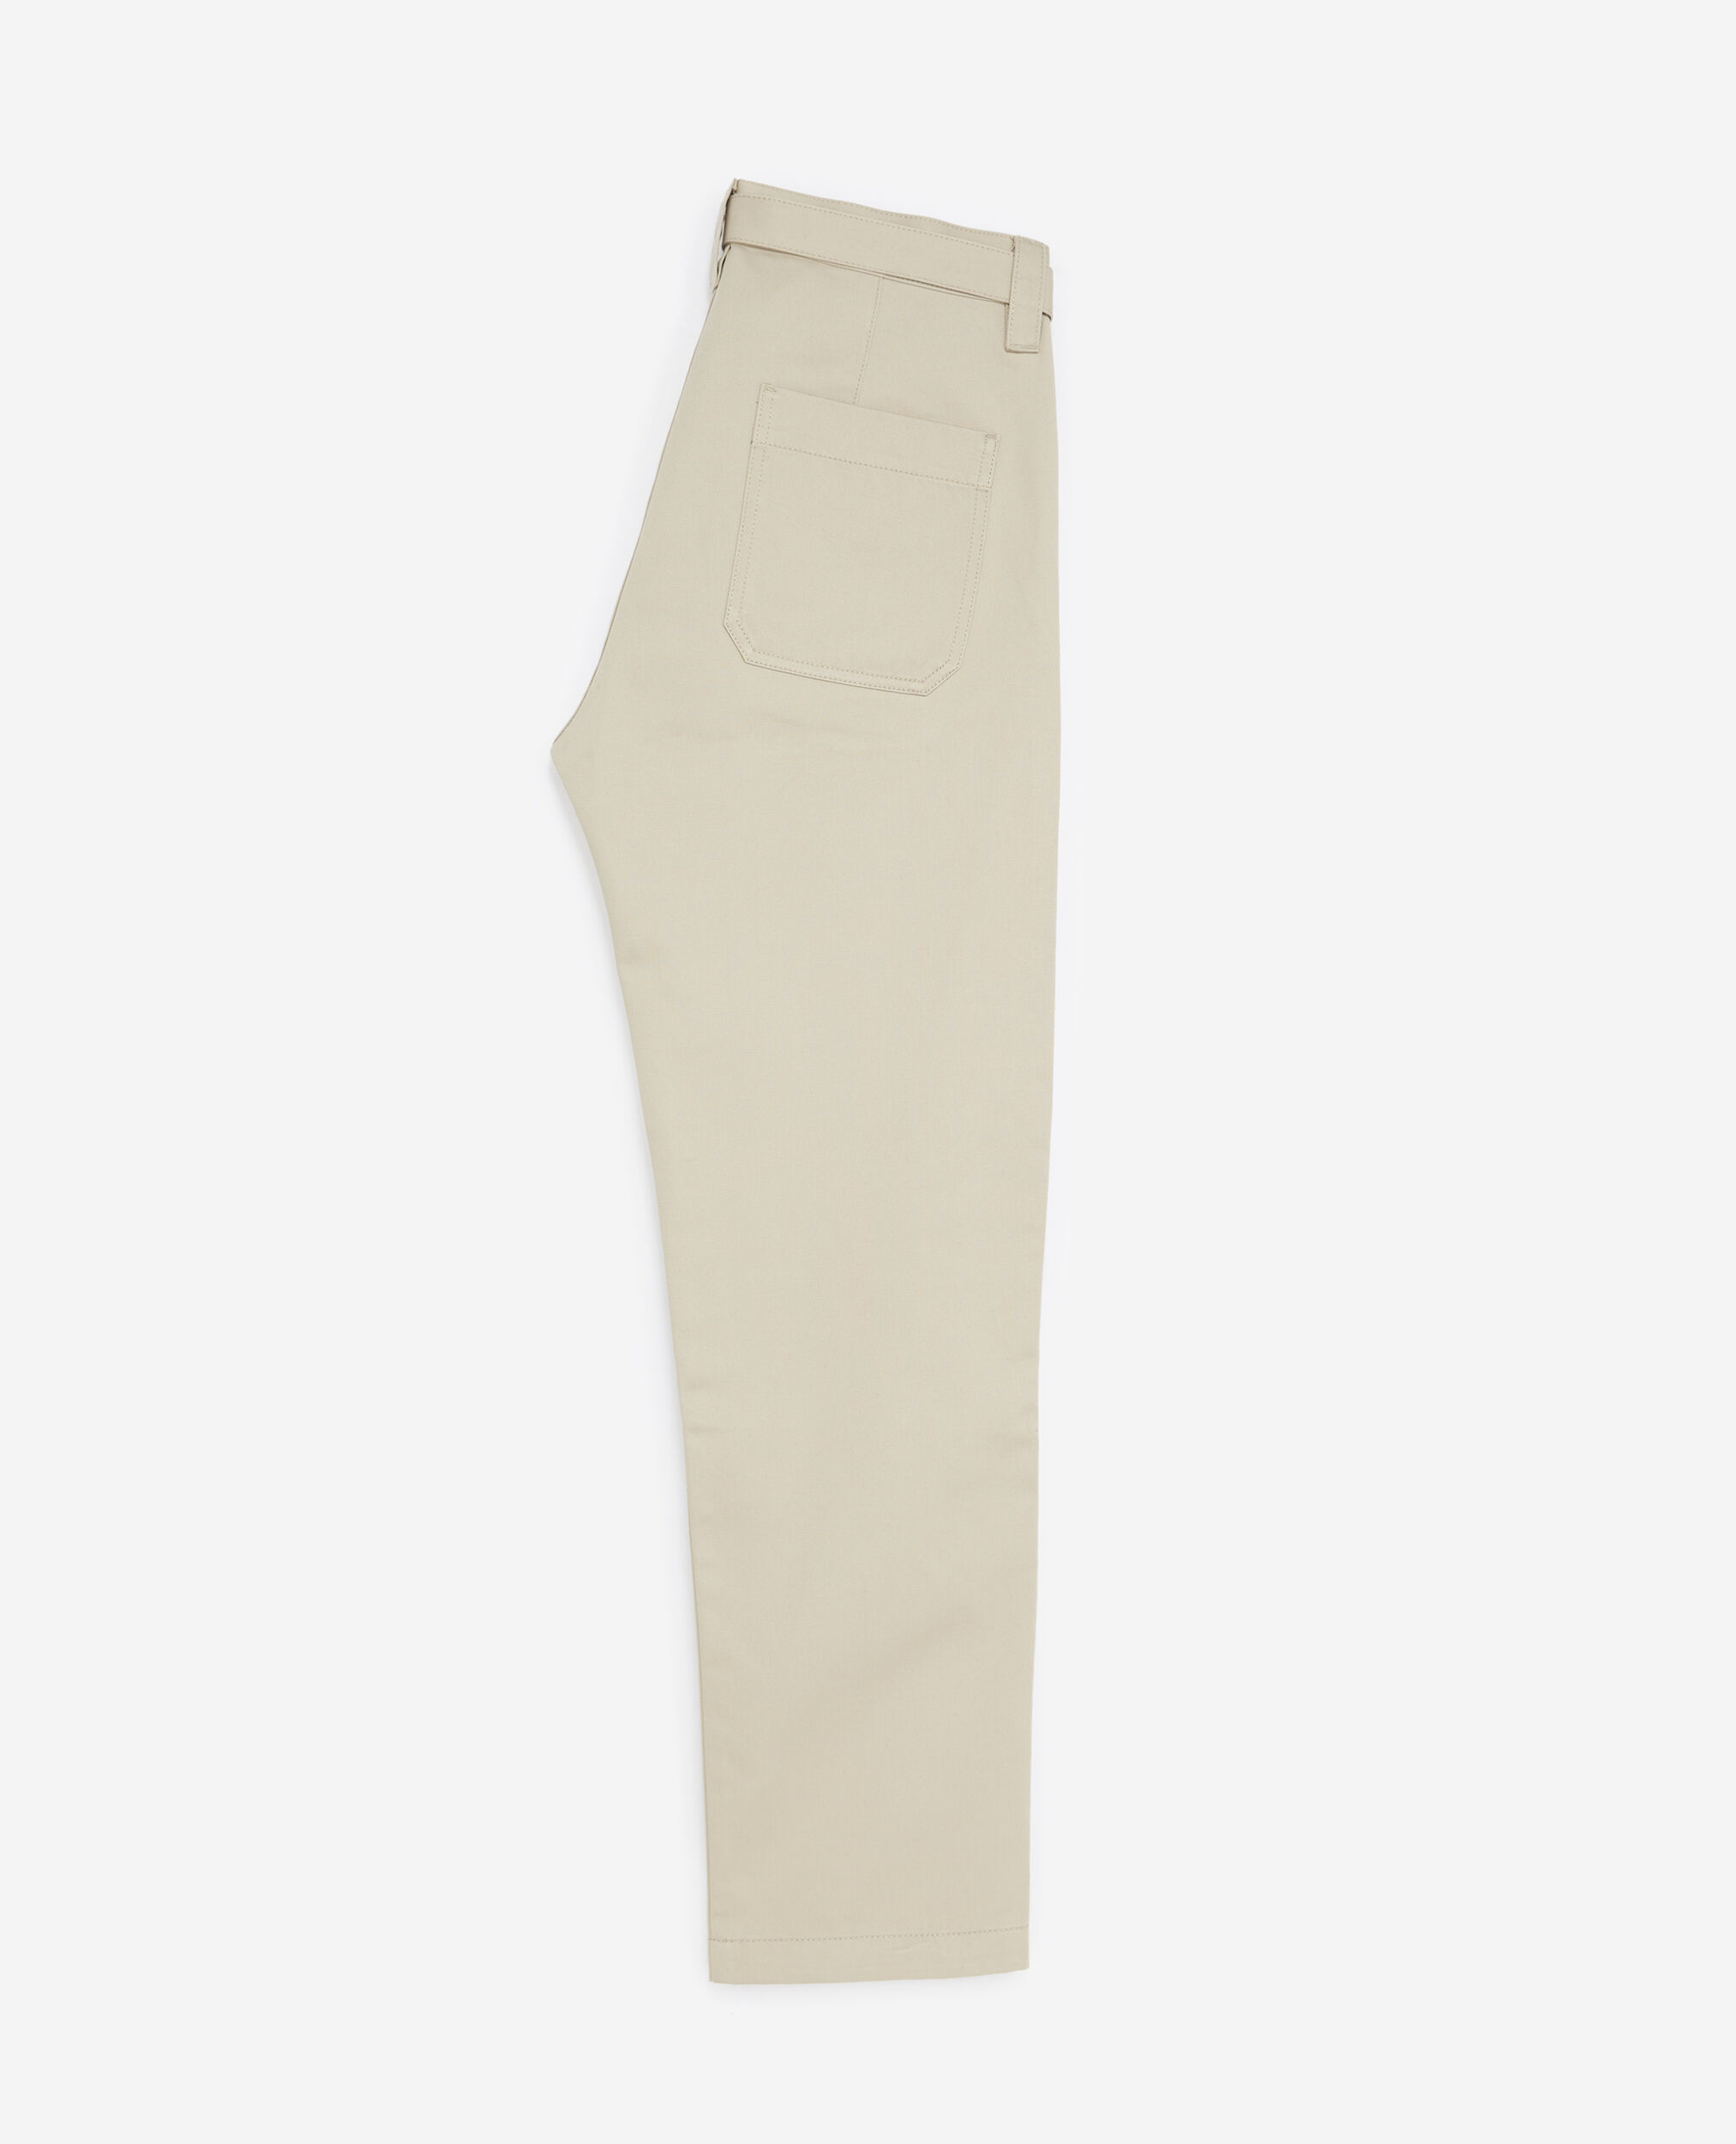 Pantalón algodón beige cinturón integrado, BEIGE, hi-res image number null